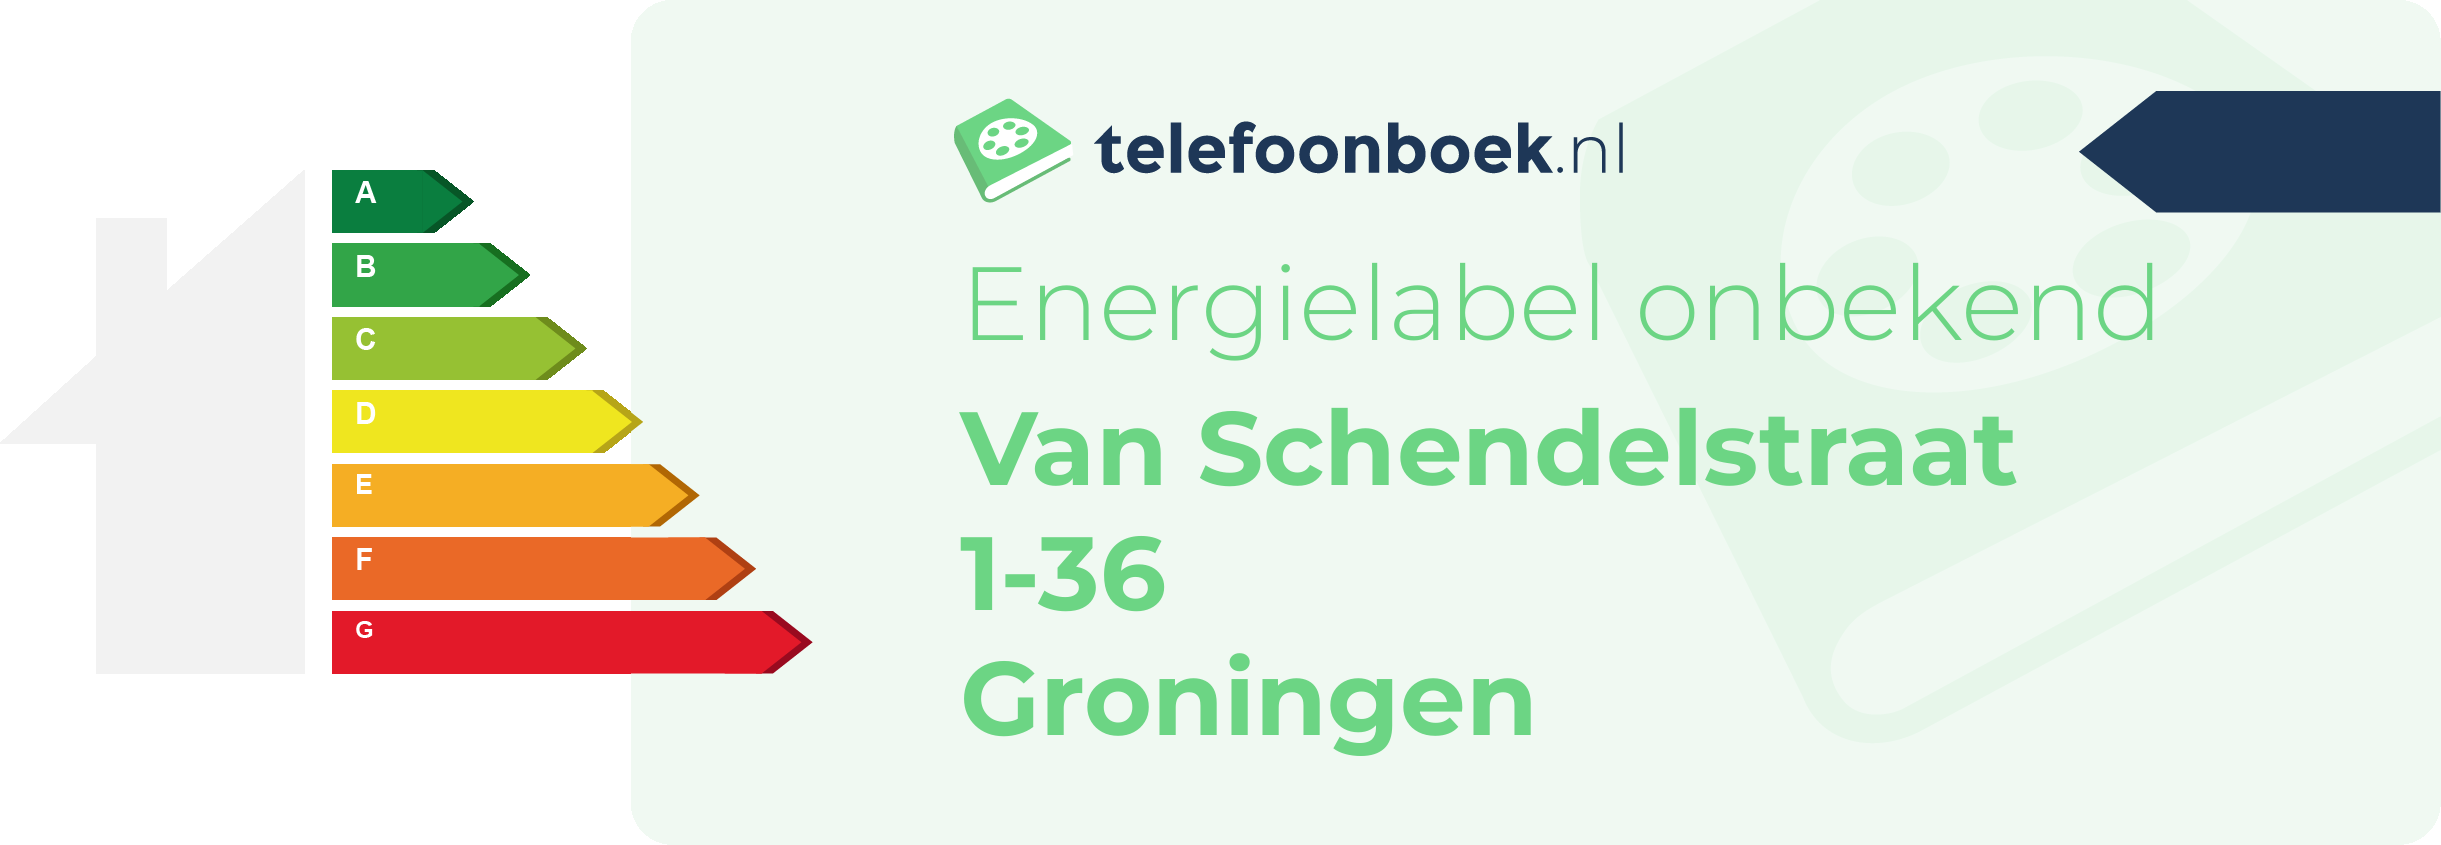 Energielabel Van Schendelstraat 1-36 Groningen